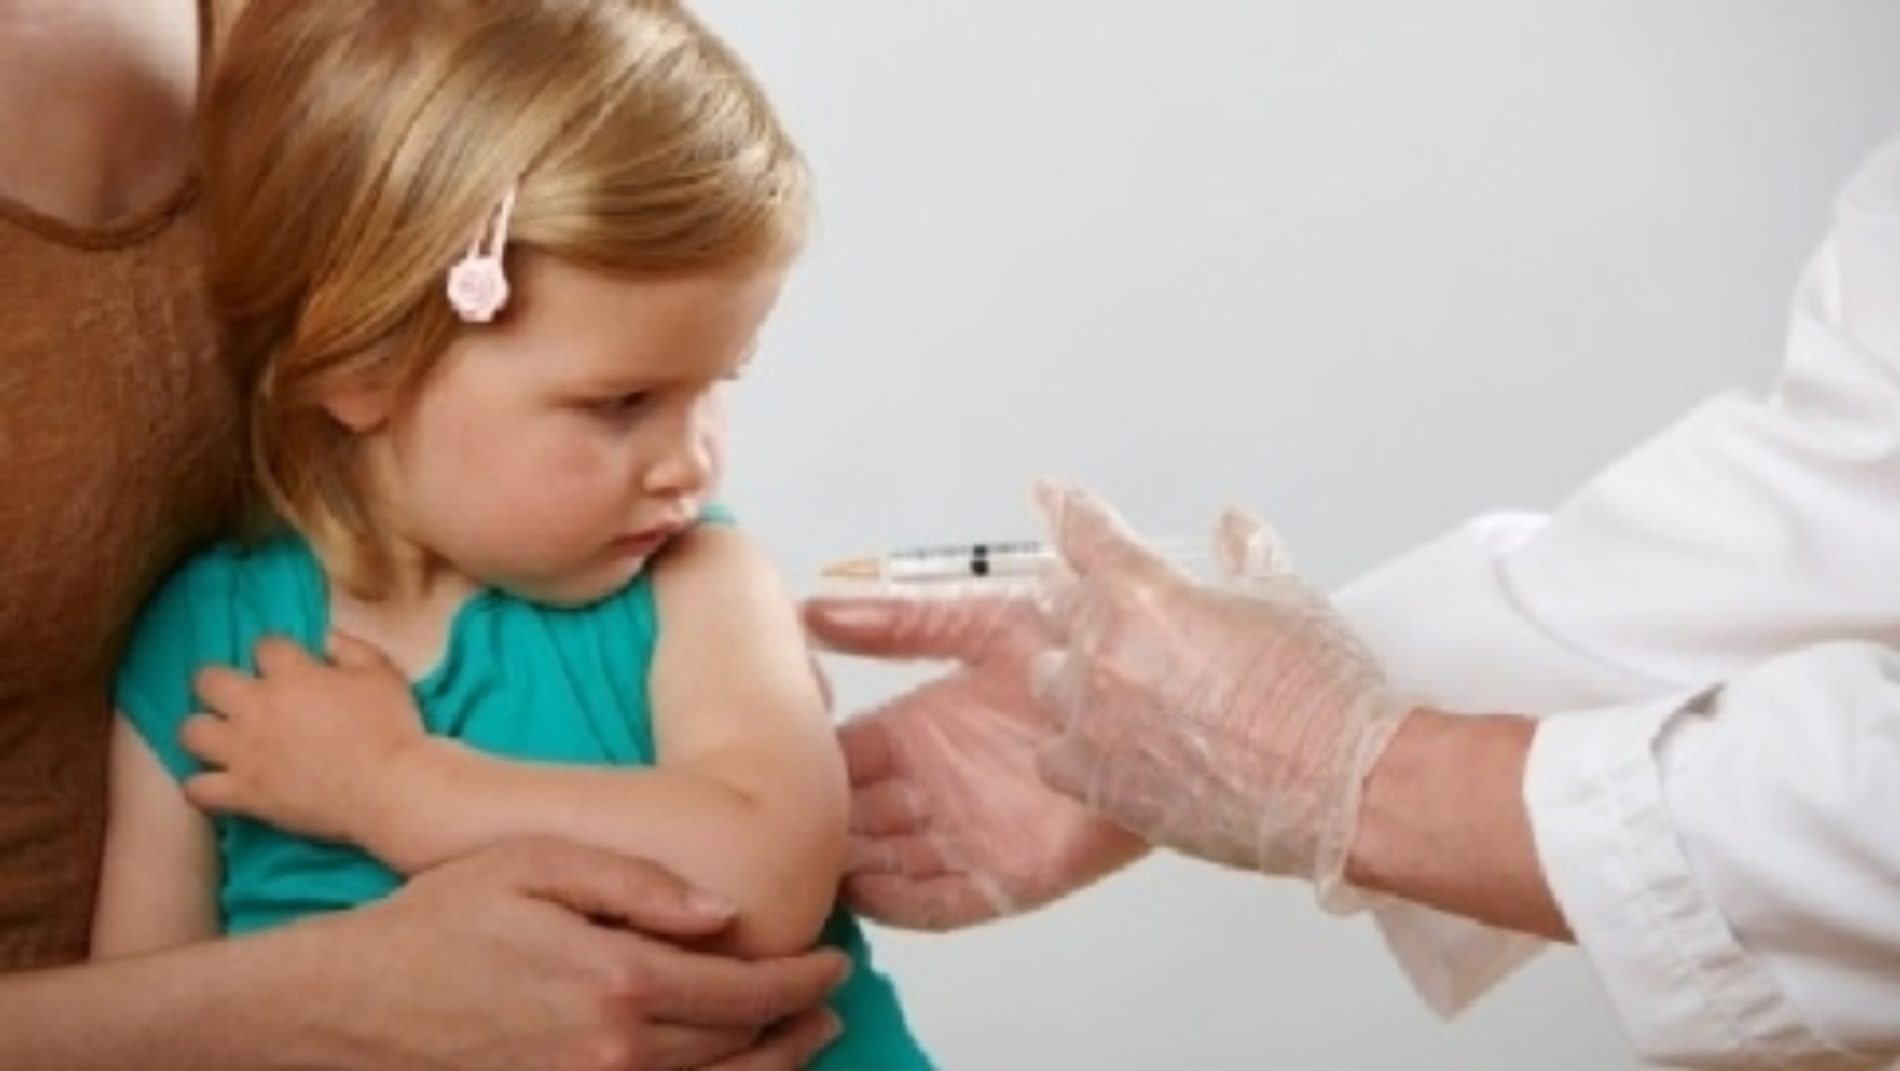 Meno bambini vaccinati